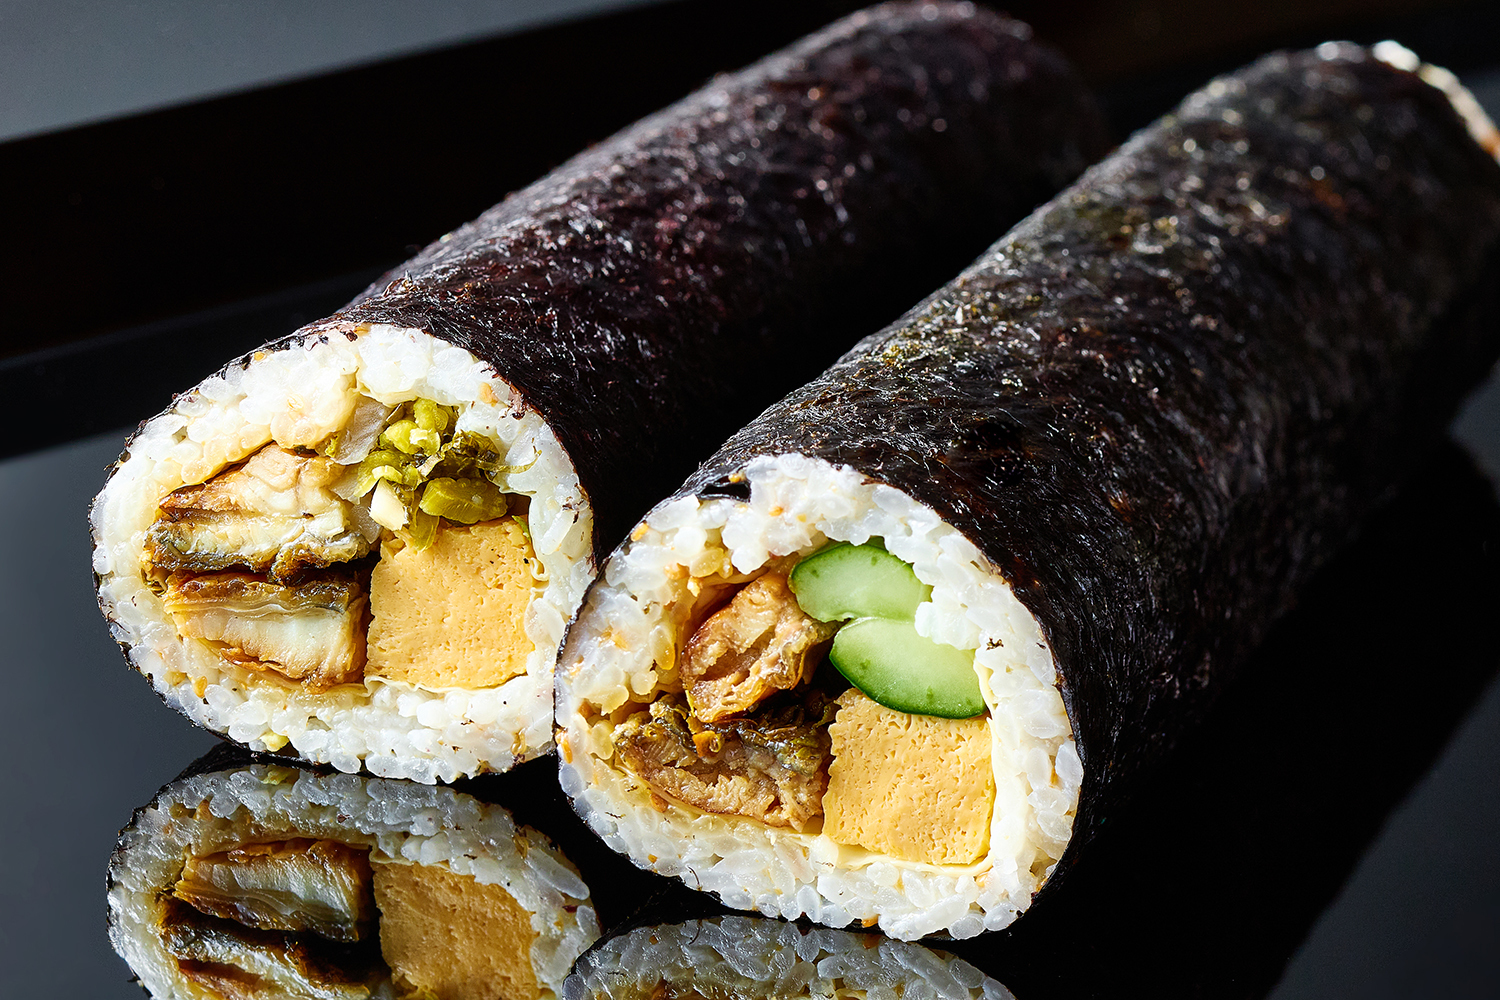 鰻、鮑、鮎　夏の美味を炊き込み御飯、巻寿司に仕立てた
「京都吉兆　夏の御飯シリーズ」